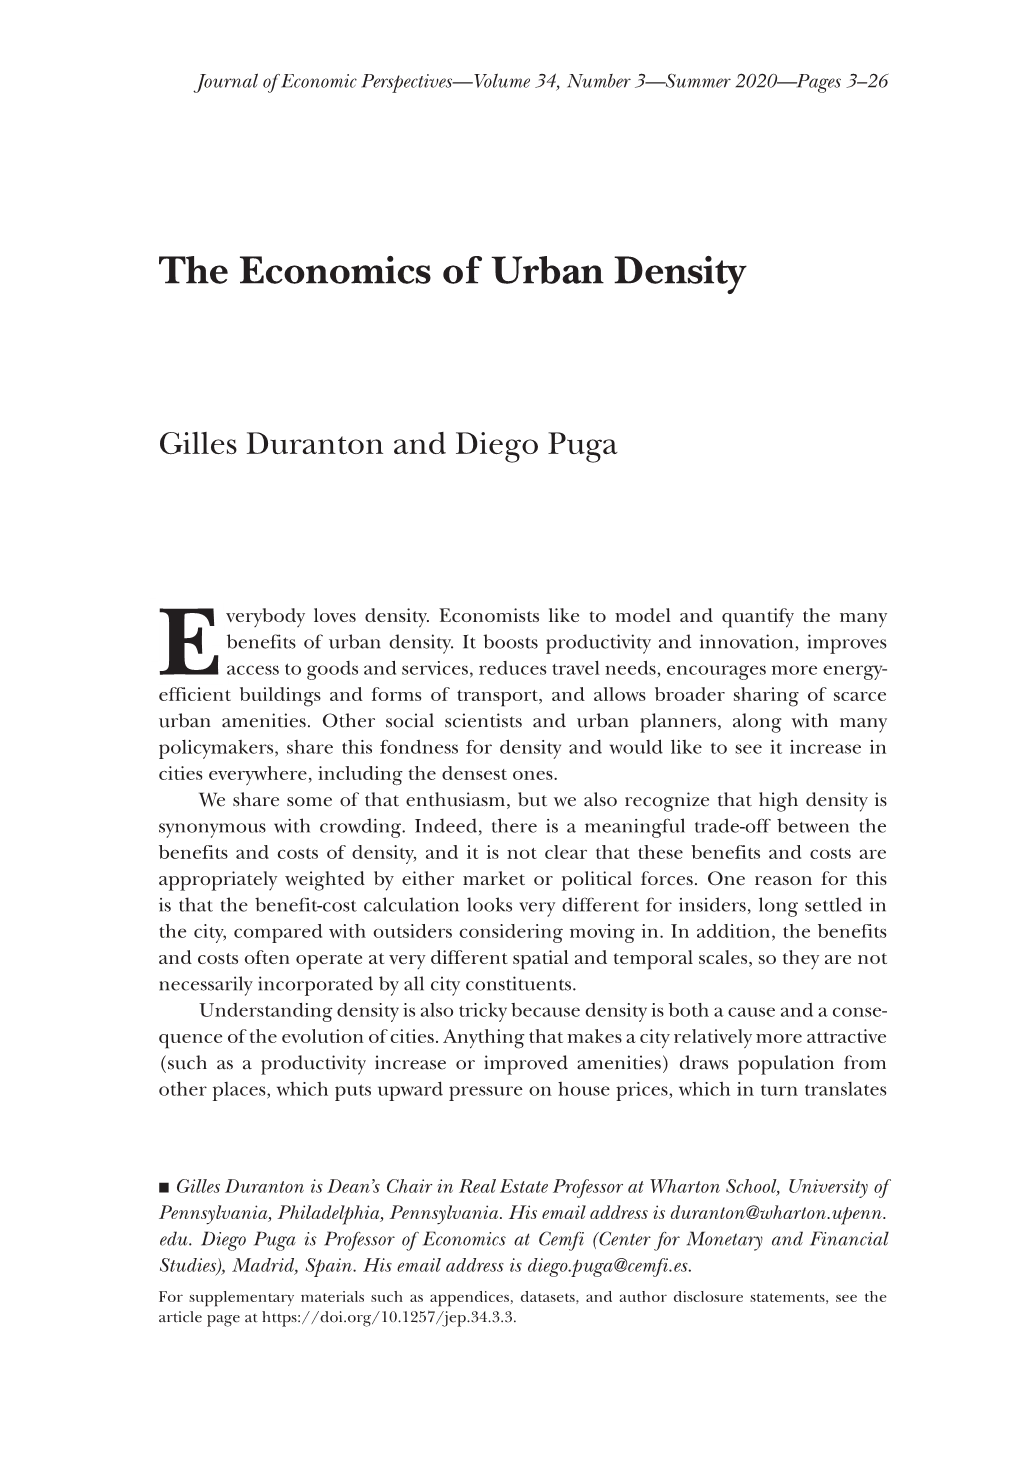 The Economics of Urban Density